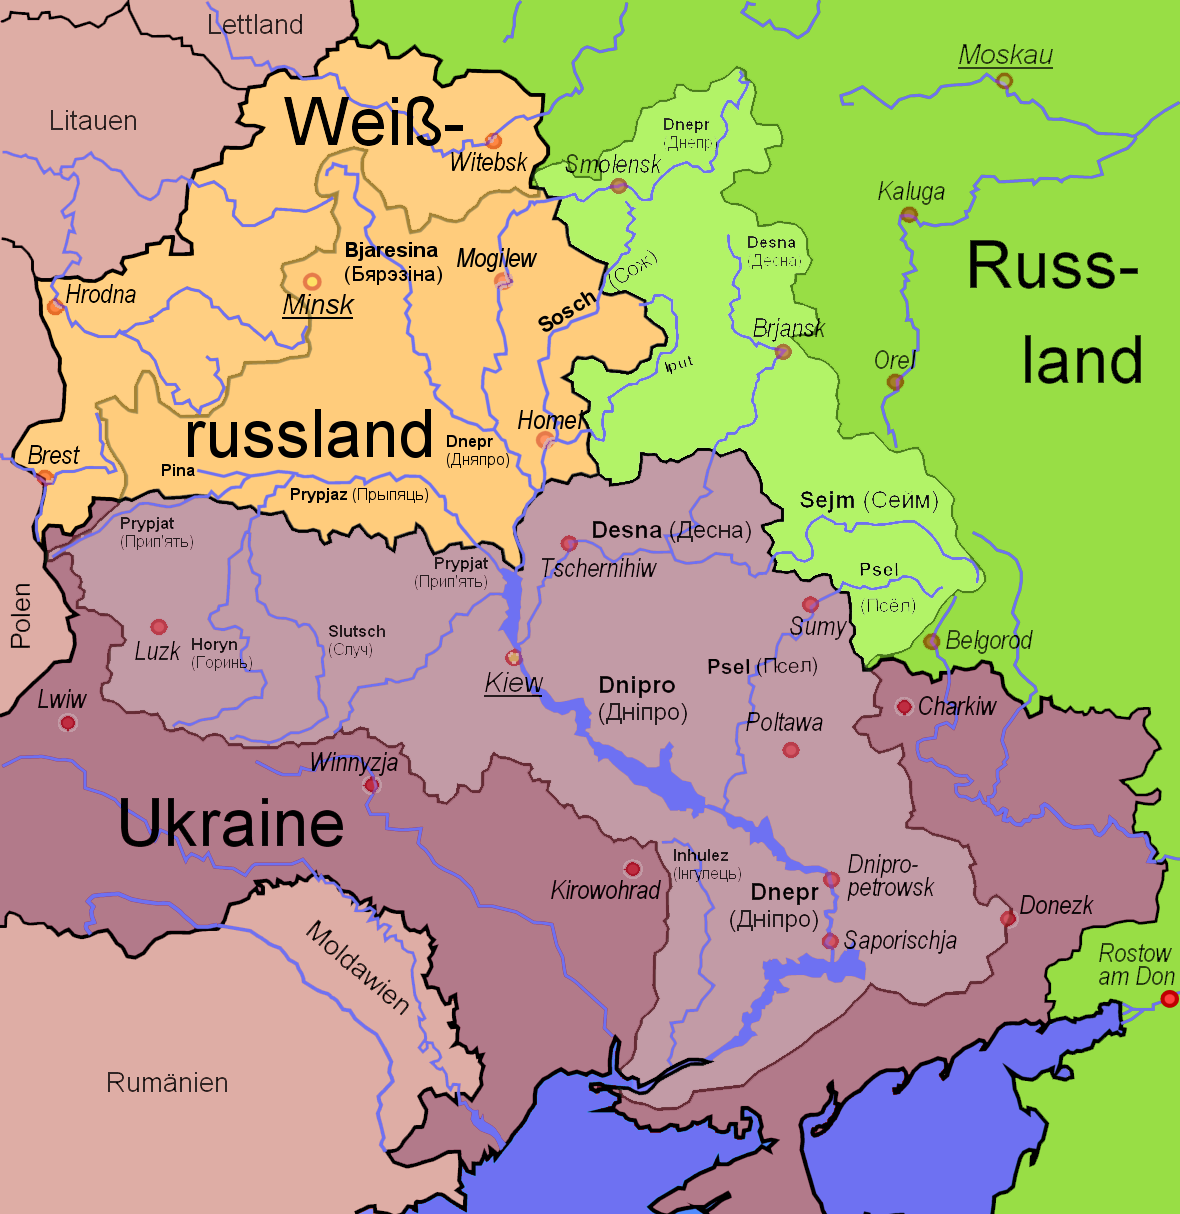 Rusiya və Ukrayna Dneprin deltasına nəzarət etməyə çalışır - Britaniya kəşfiyyatı